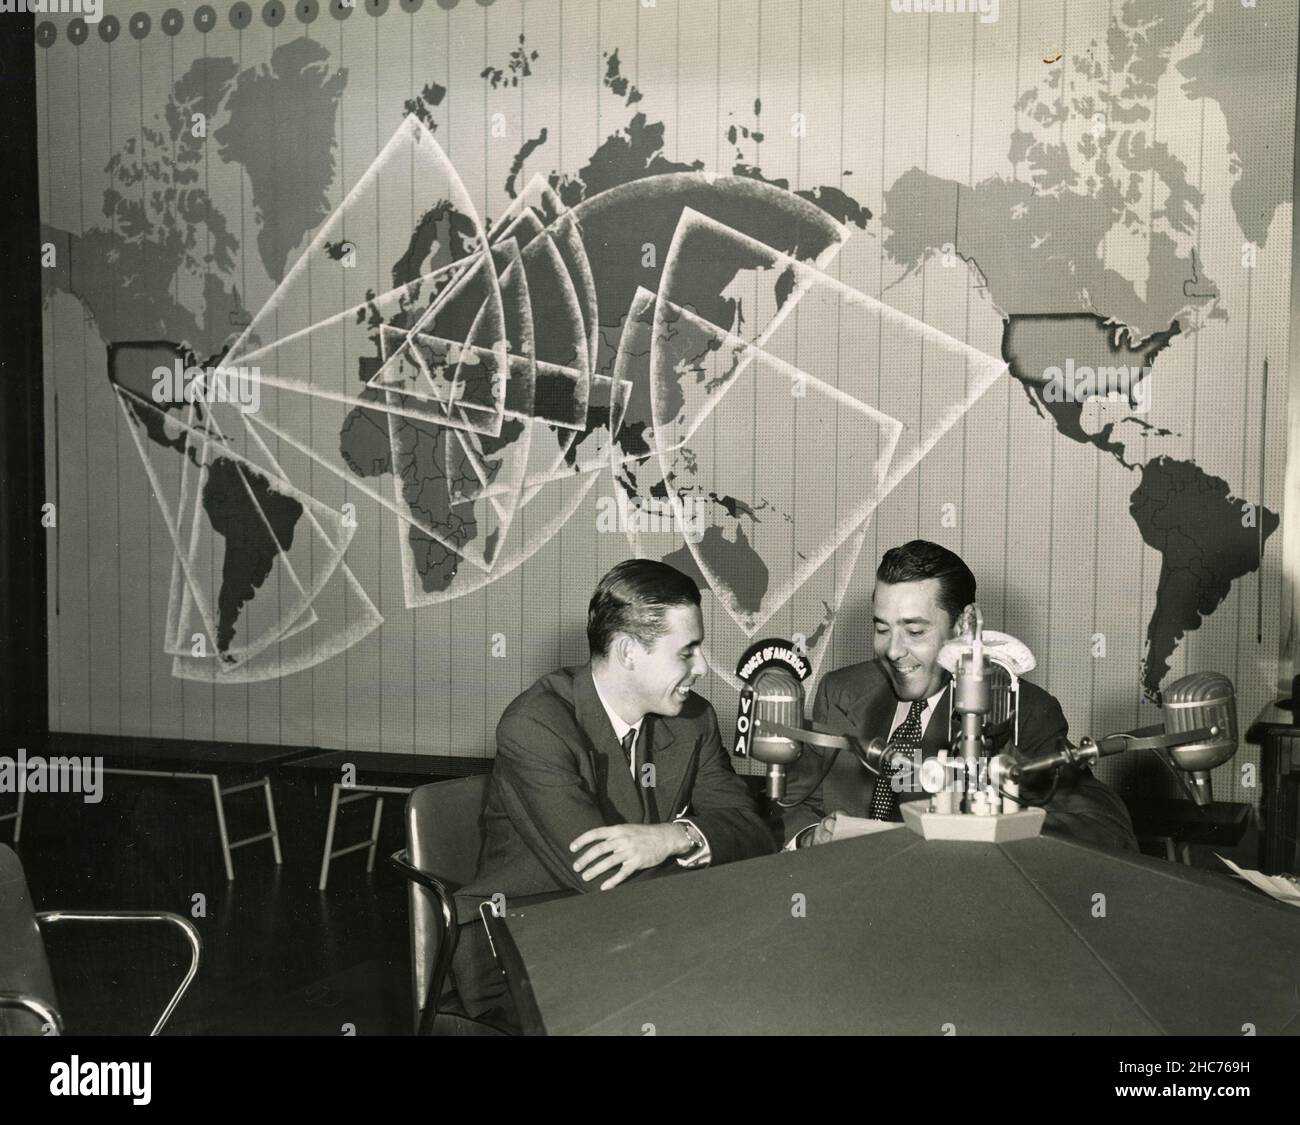 Le duc de Veragua de 17th, Cristobal Colon de Carvajal y Maroto, officier de la marine espagnole (à gauche) et Joaquin Zavala, annonceur de la voix de l'Amérique, pendant un enterview, USA 1950s Banque D'Images